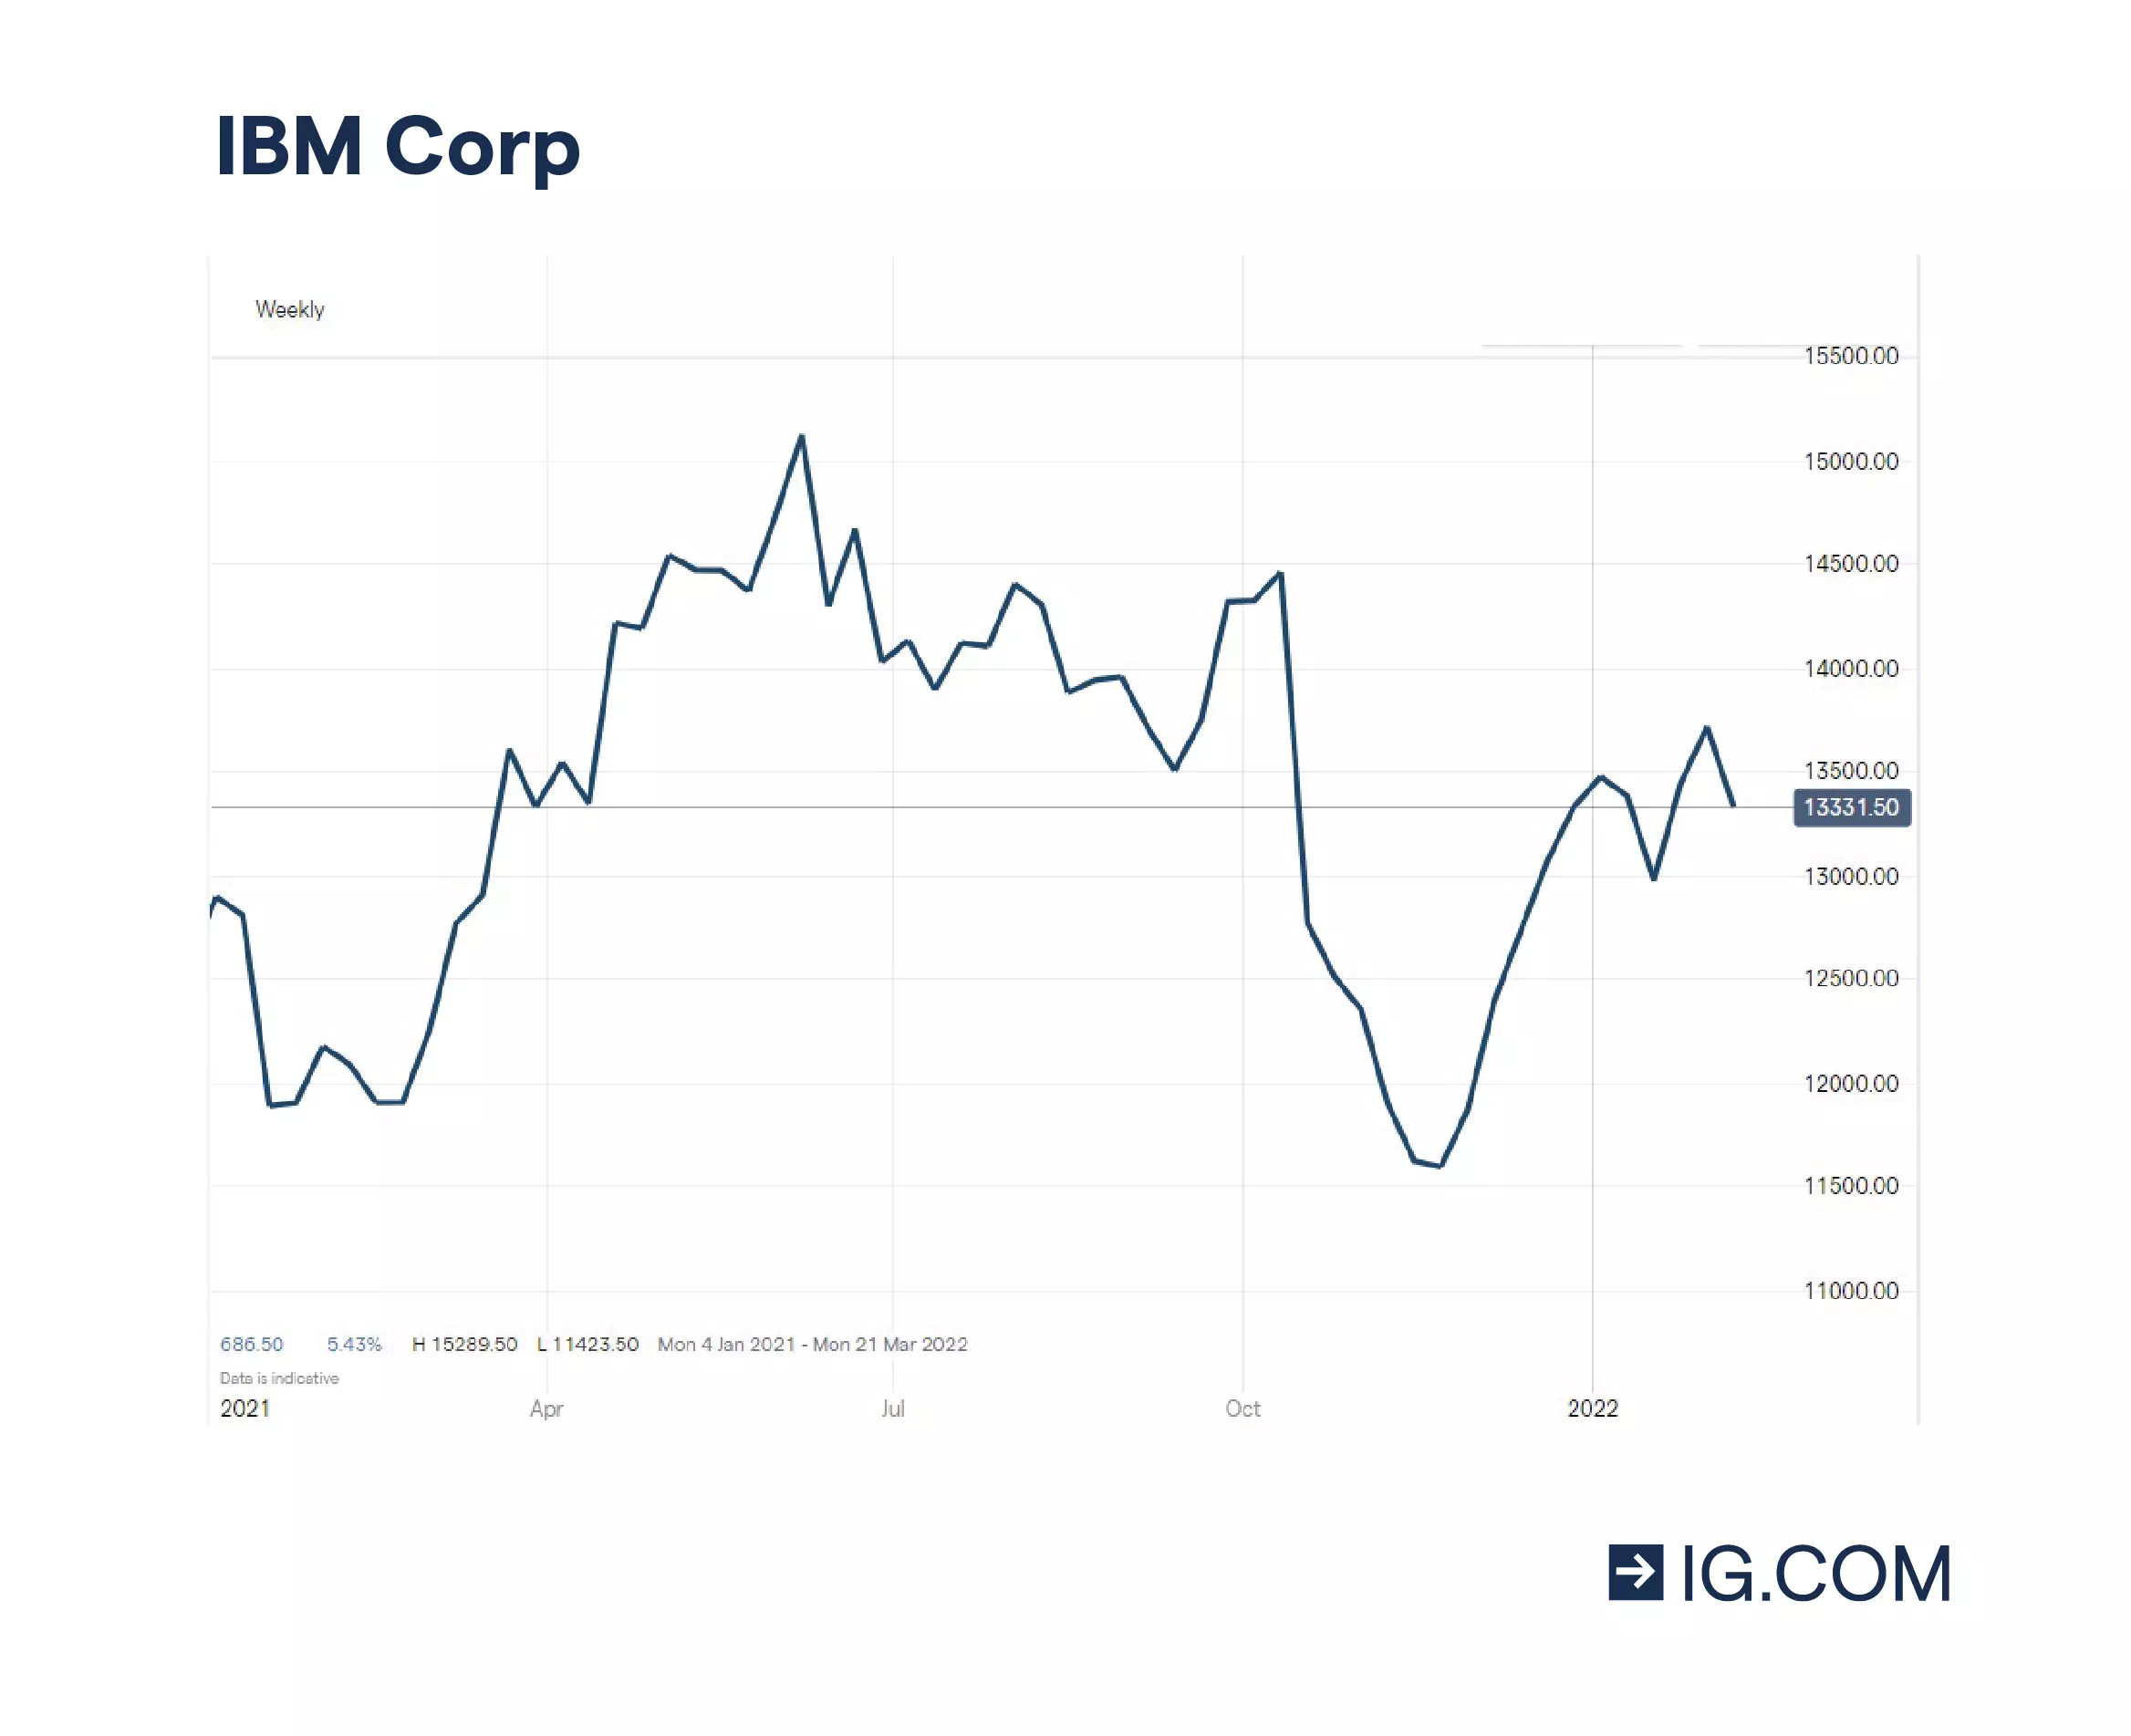 Historique de cours récent d'IBM, qui indique une certaine volatilité mais de nombreuses opportunités pour le quantique.